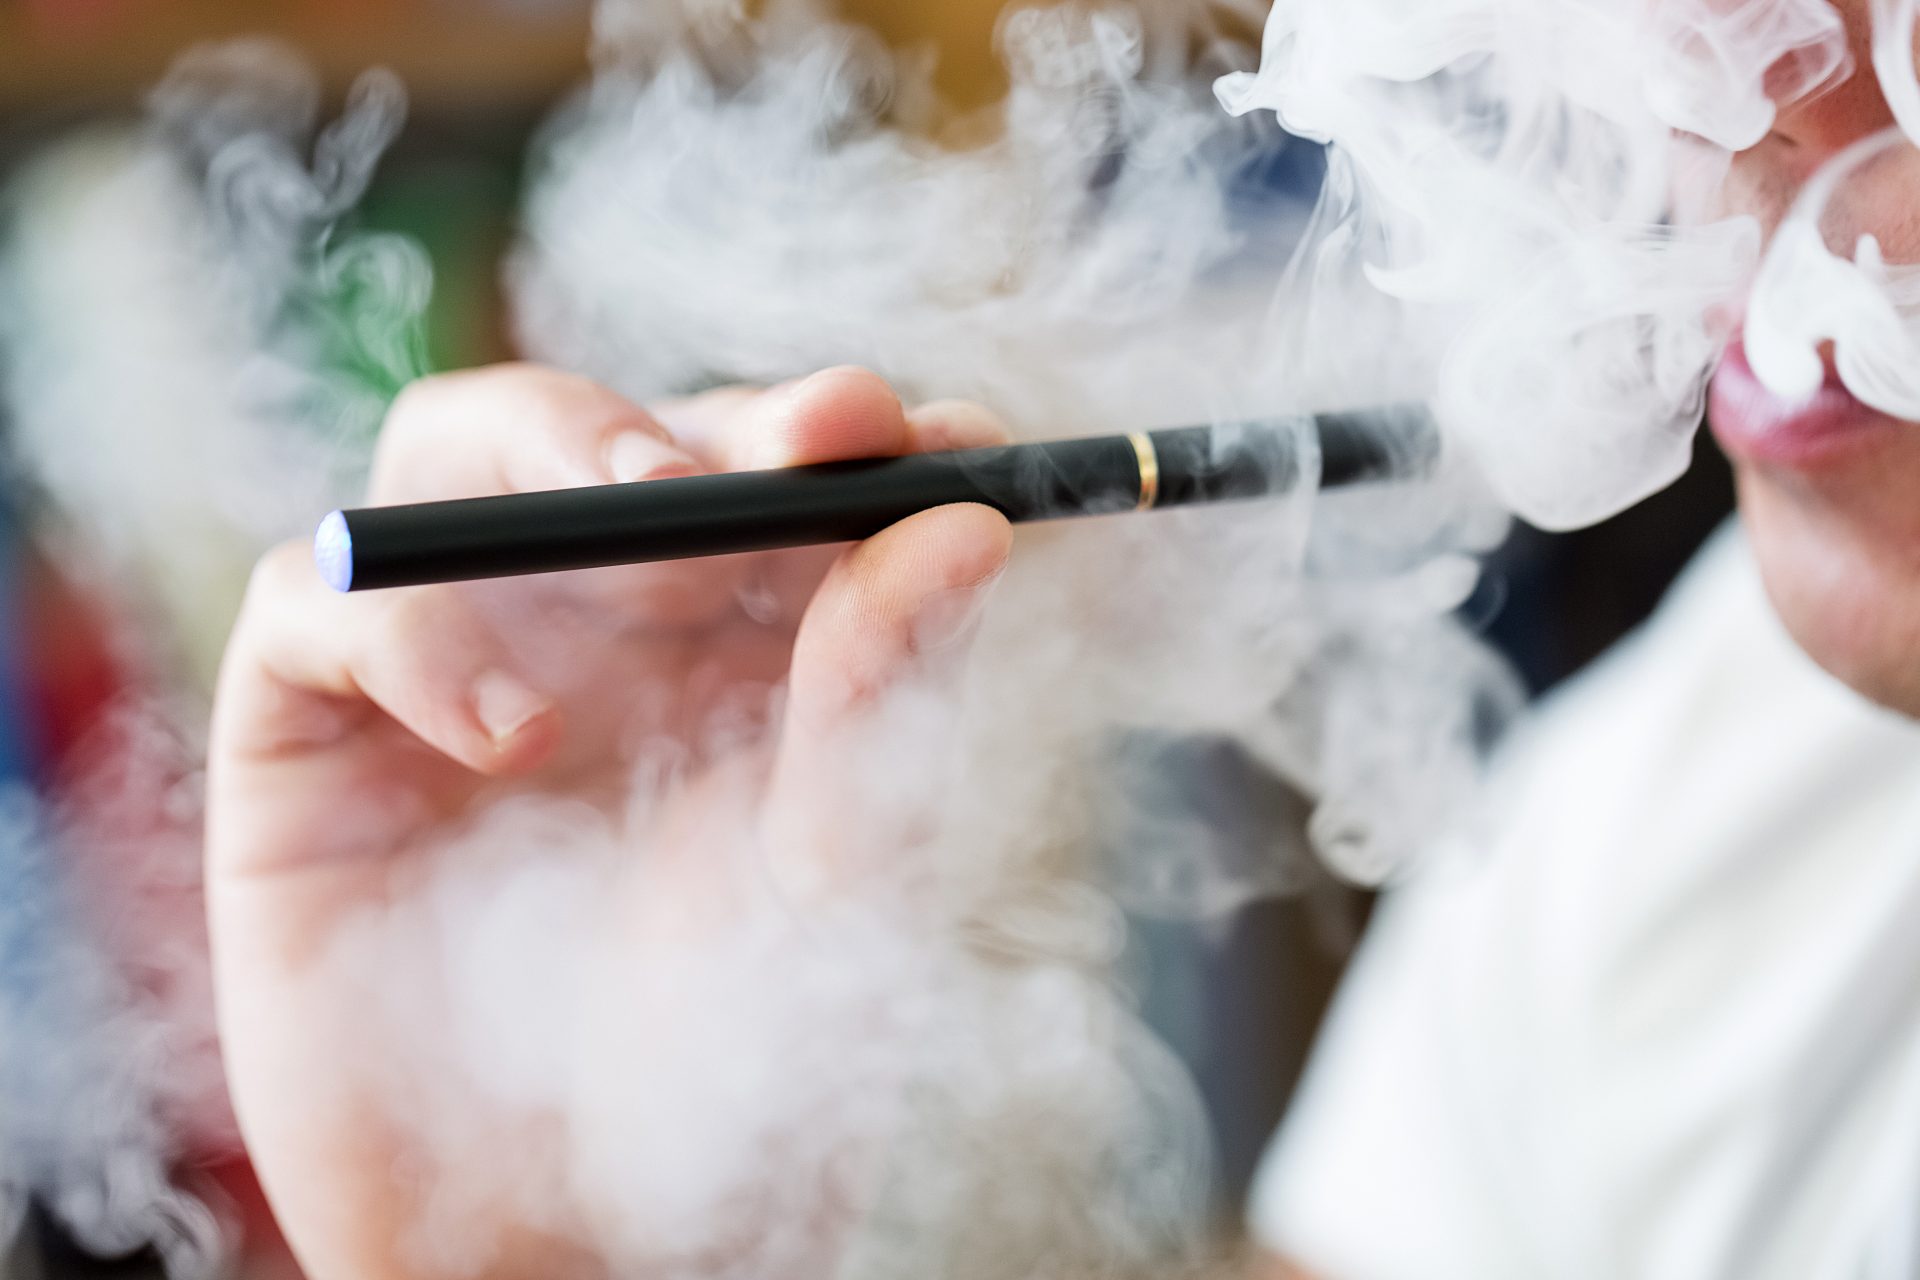 Coalition of 31 states calls on FDA to control flavored e-cigarettes